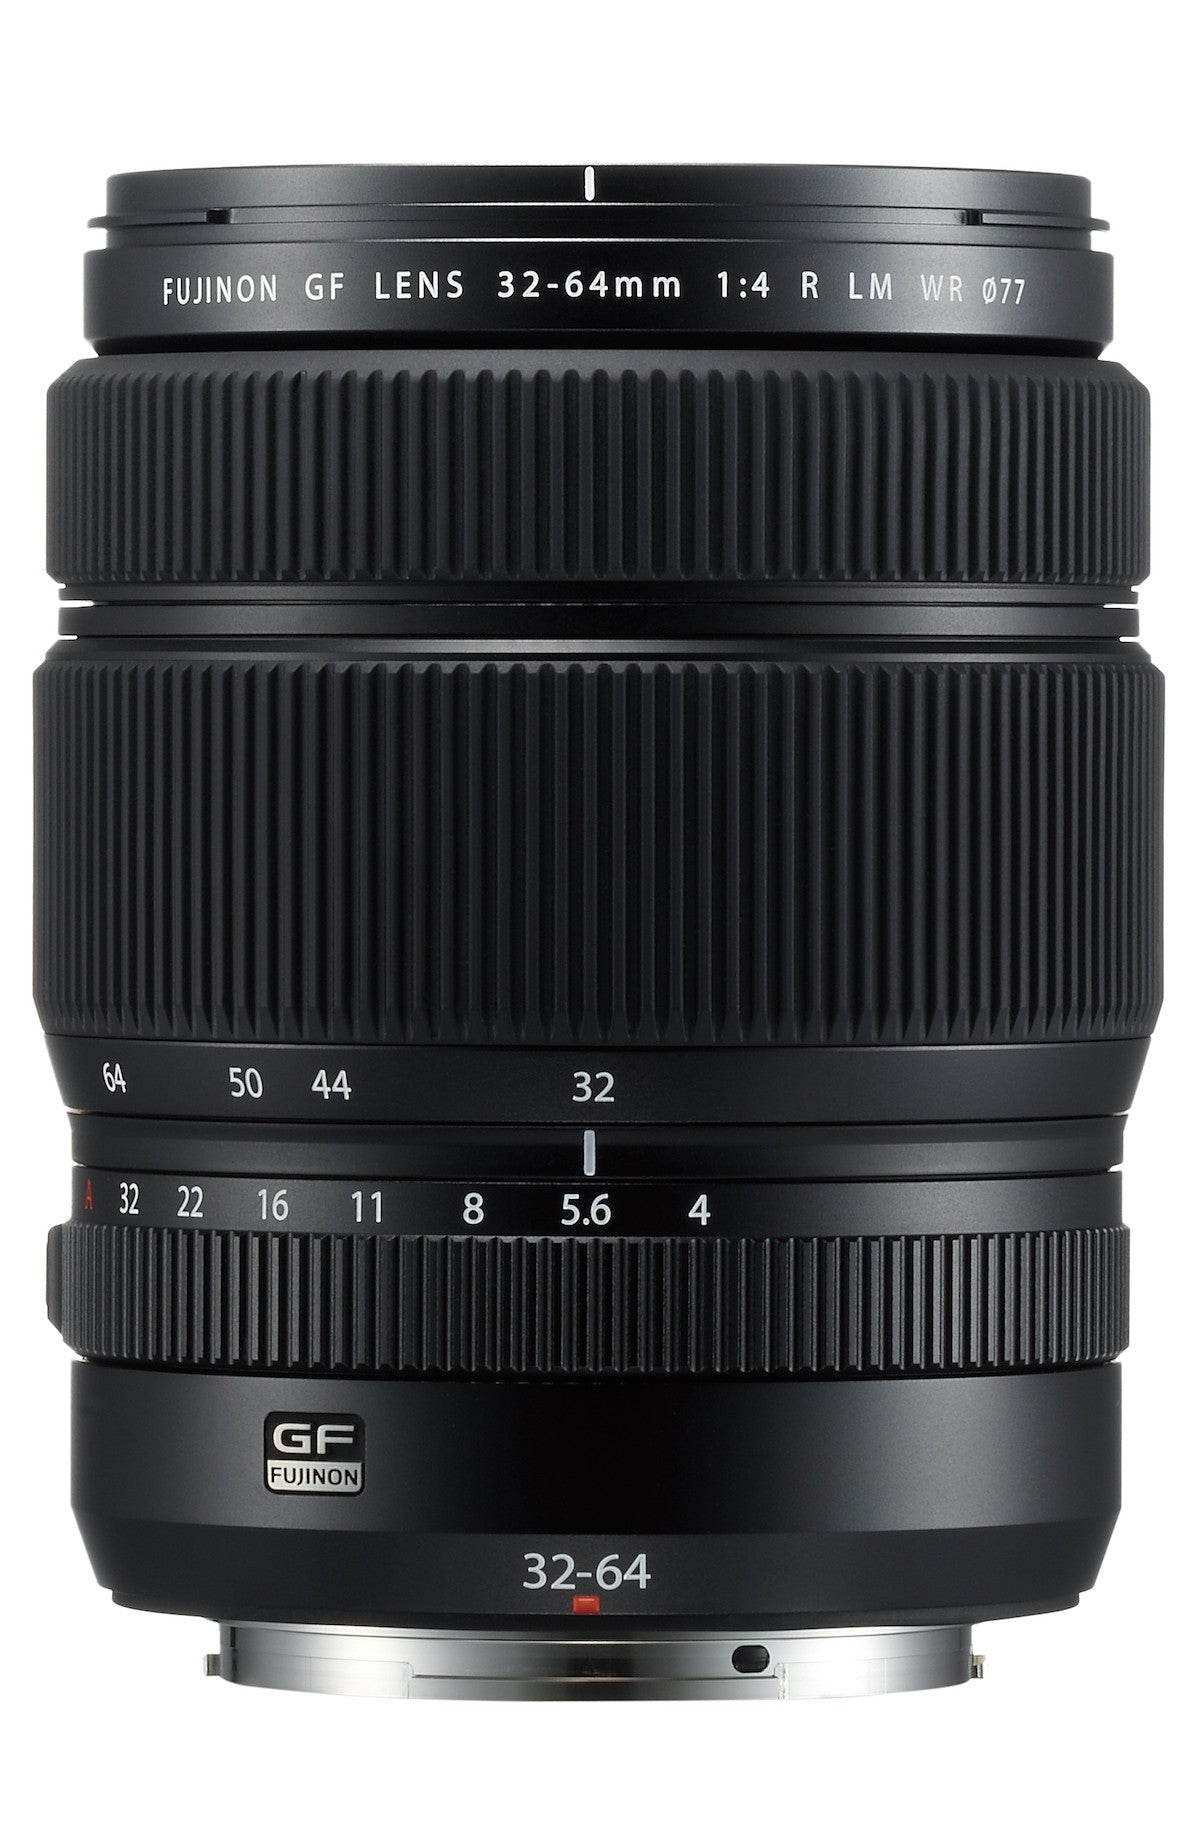 Fujifilm GF 32-64mm f4 R LM WR Lens, lenses medium format, Fujifilm - Pictureline  - 2